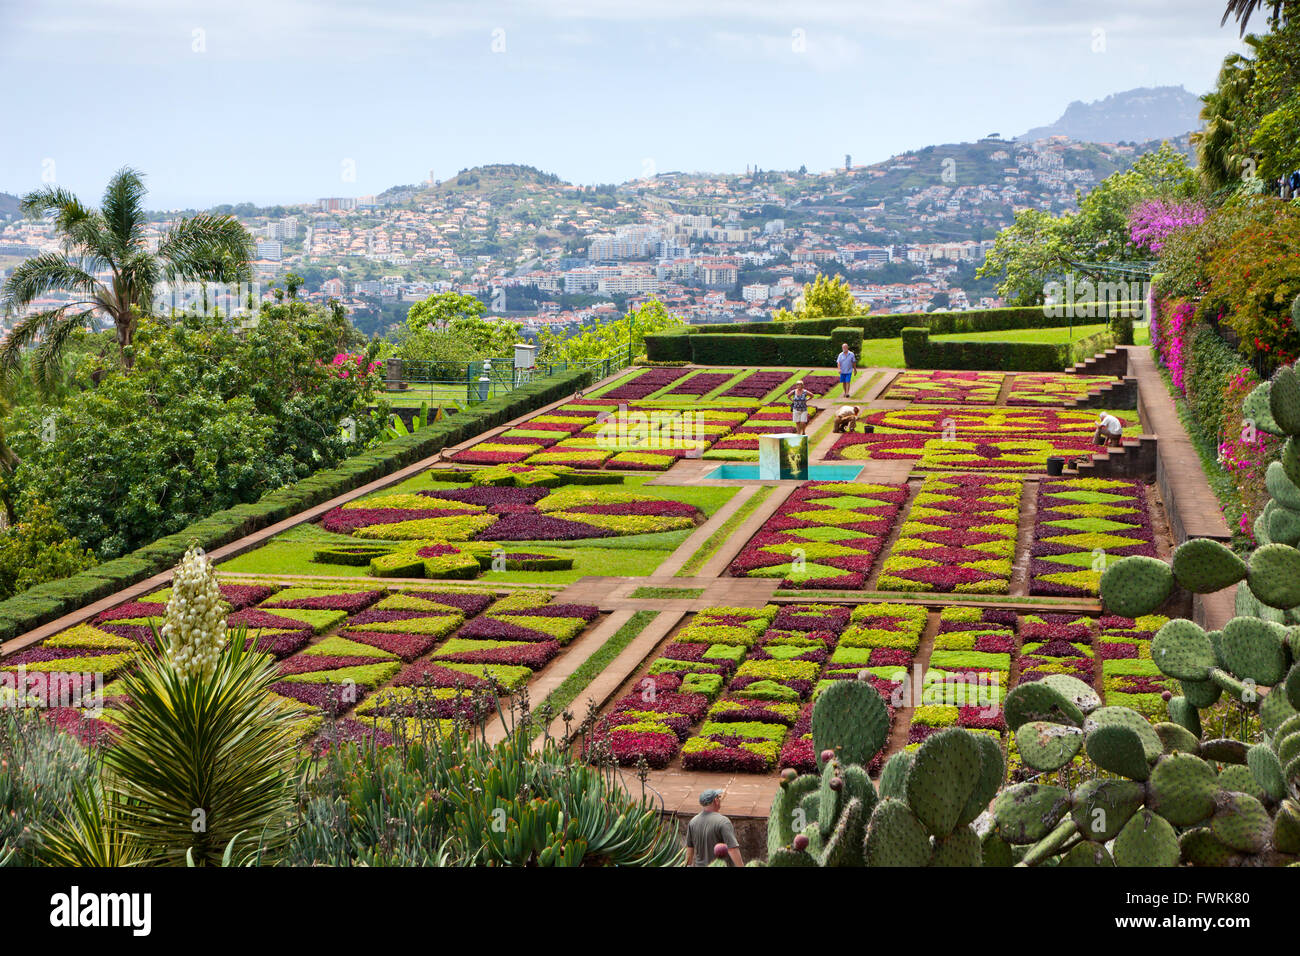 Jardín botánico tropical en la ciudad de Funchal, Madeira, Portugal Foto de stock